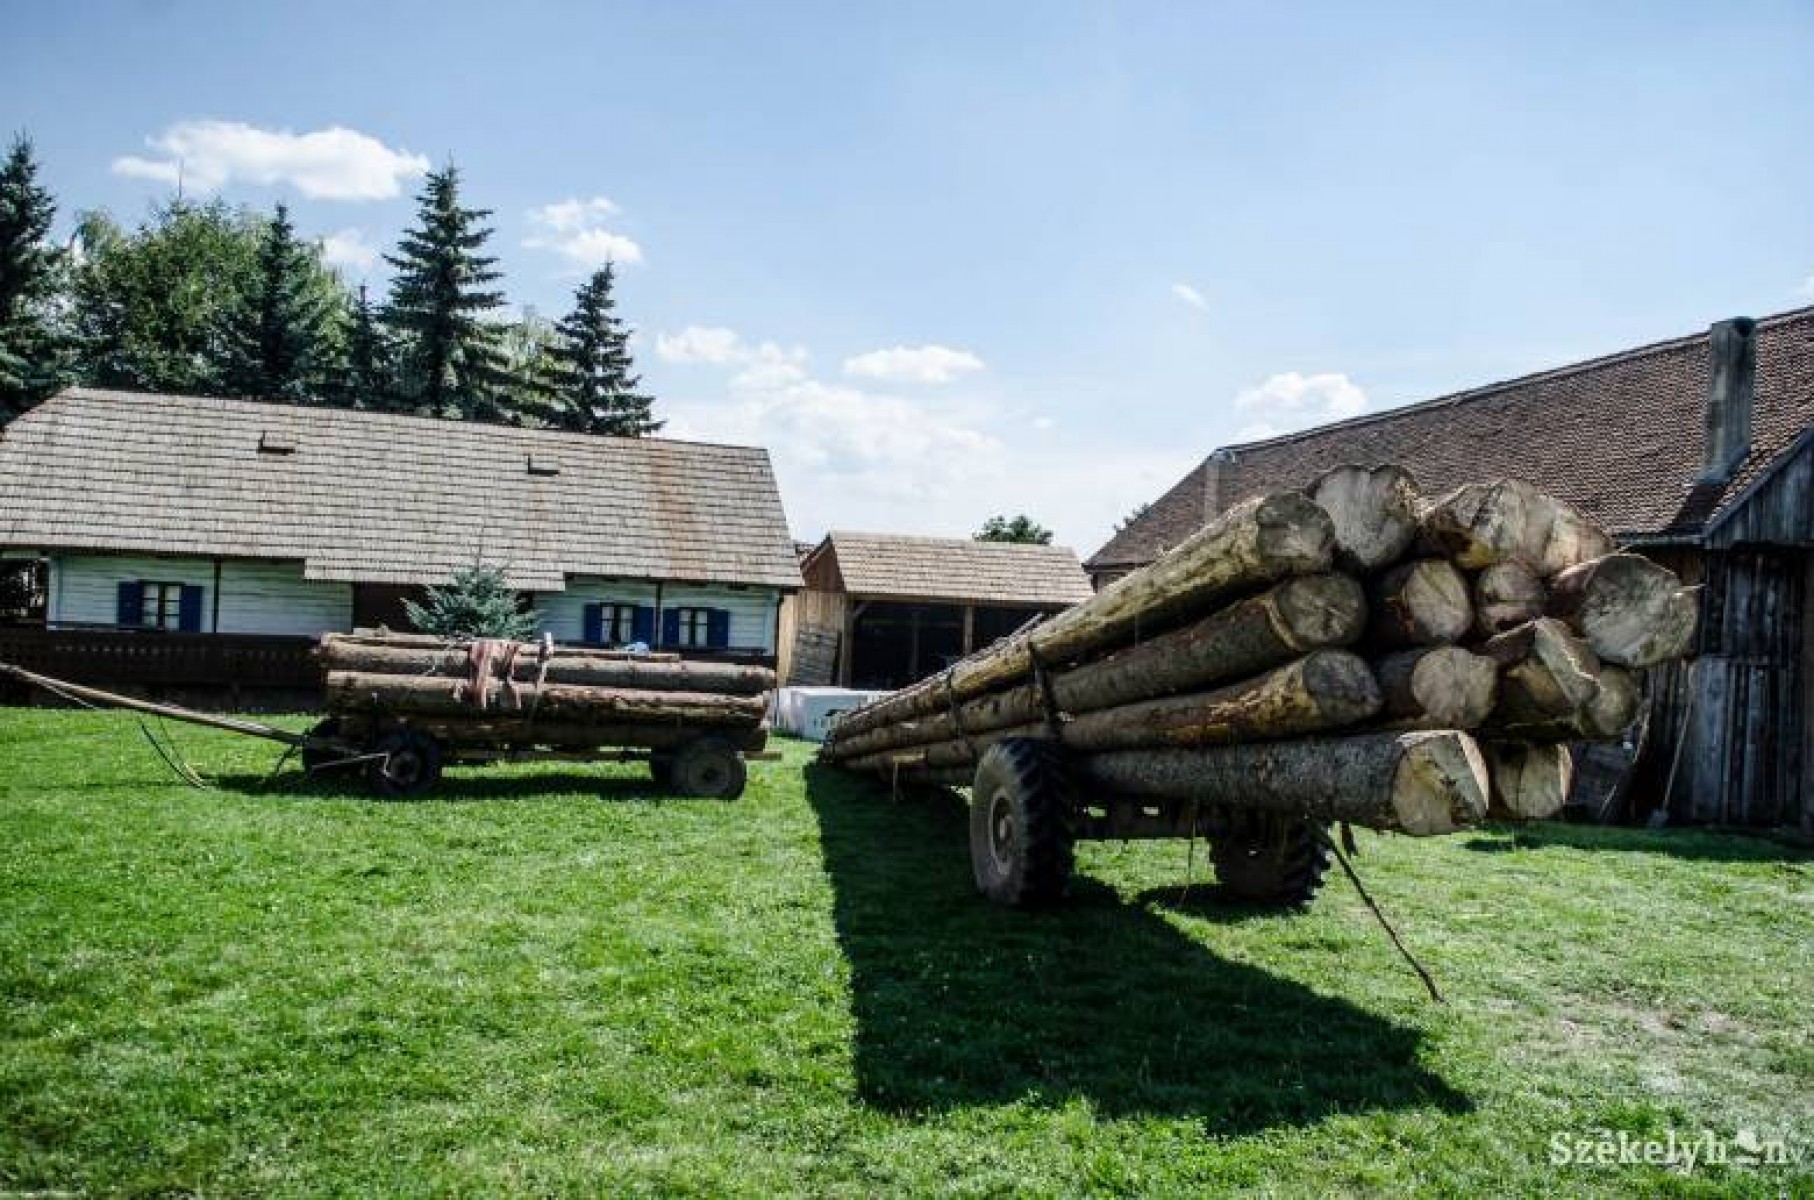 Nyolc hónap alatt 9000 környezetkárosító és erdészeti bűncselekmény Romániában